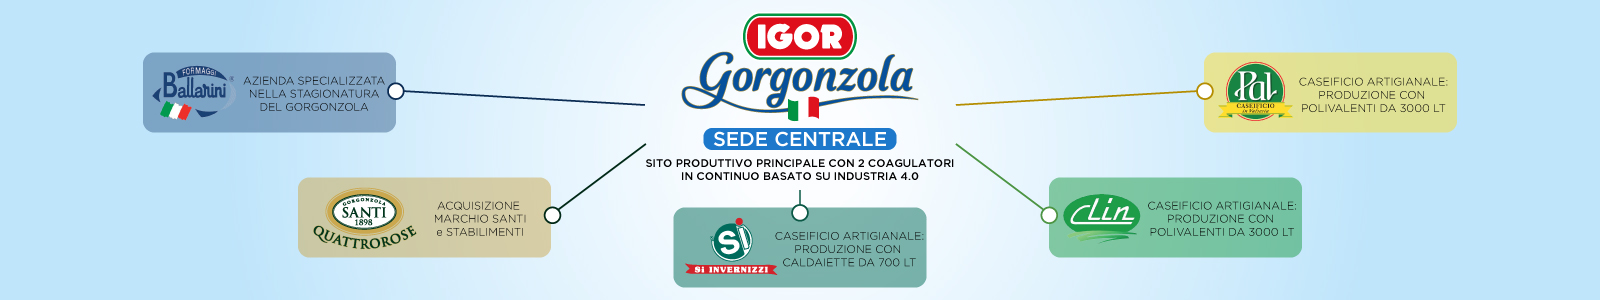 IGOR Gorgonzola Novara - Il Gruppo